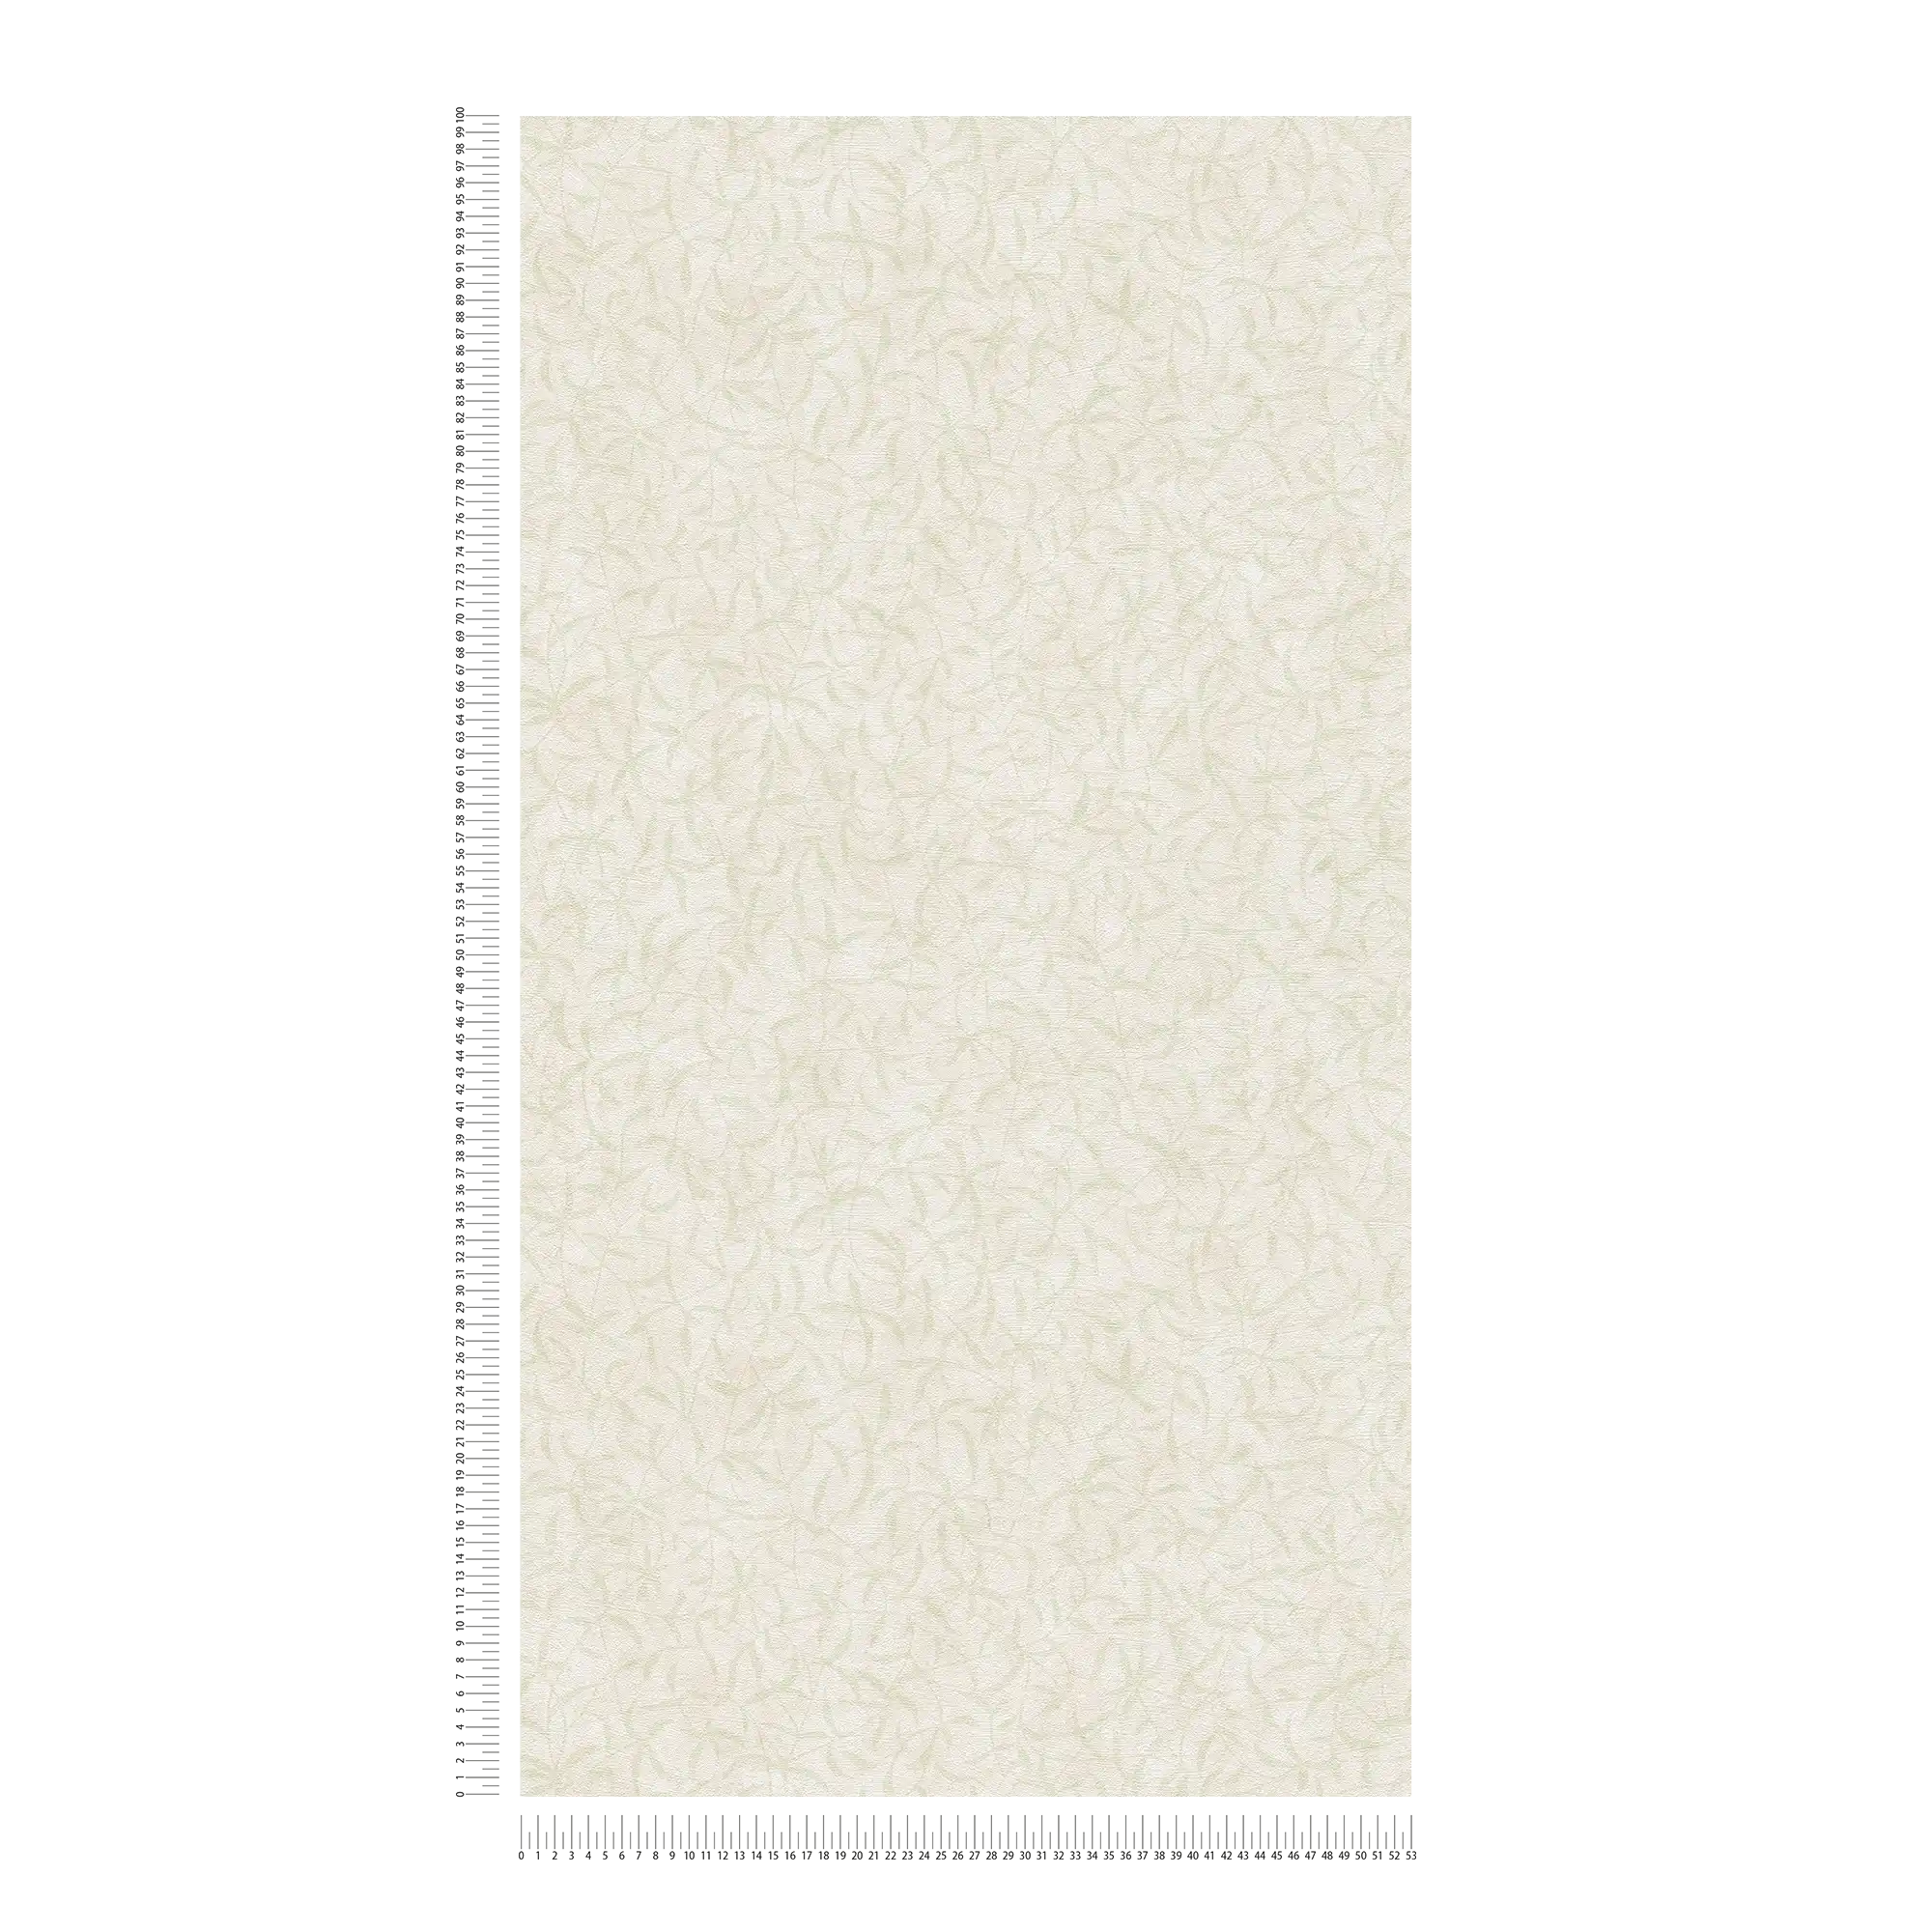             Carta da parati in tessuto non tessuto rami floreali con struttura - crema, verde
        